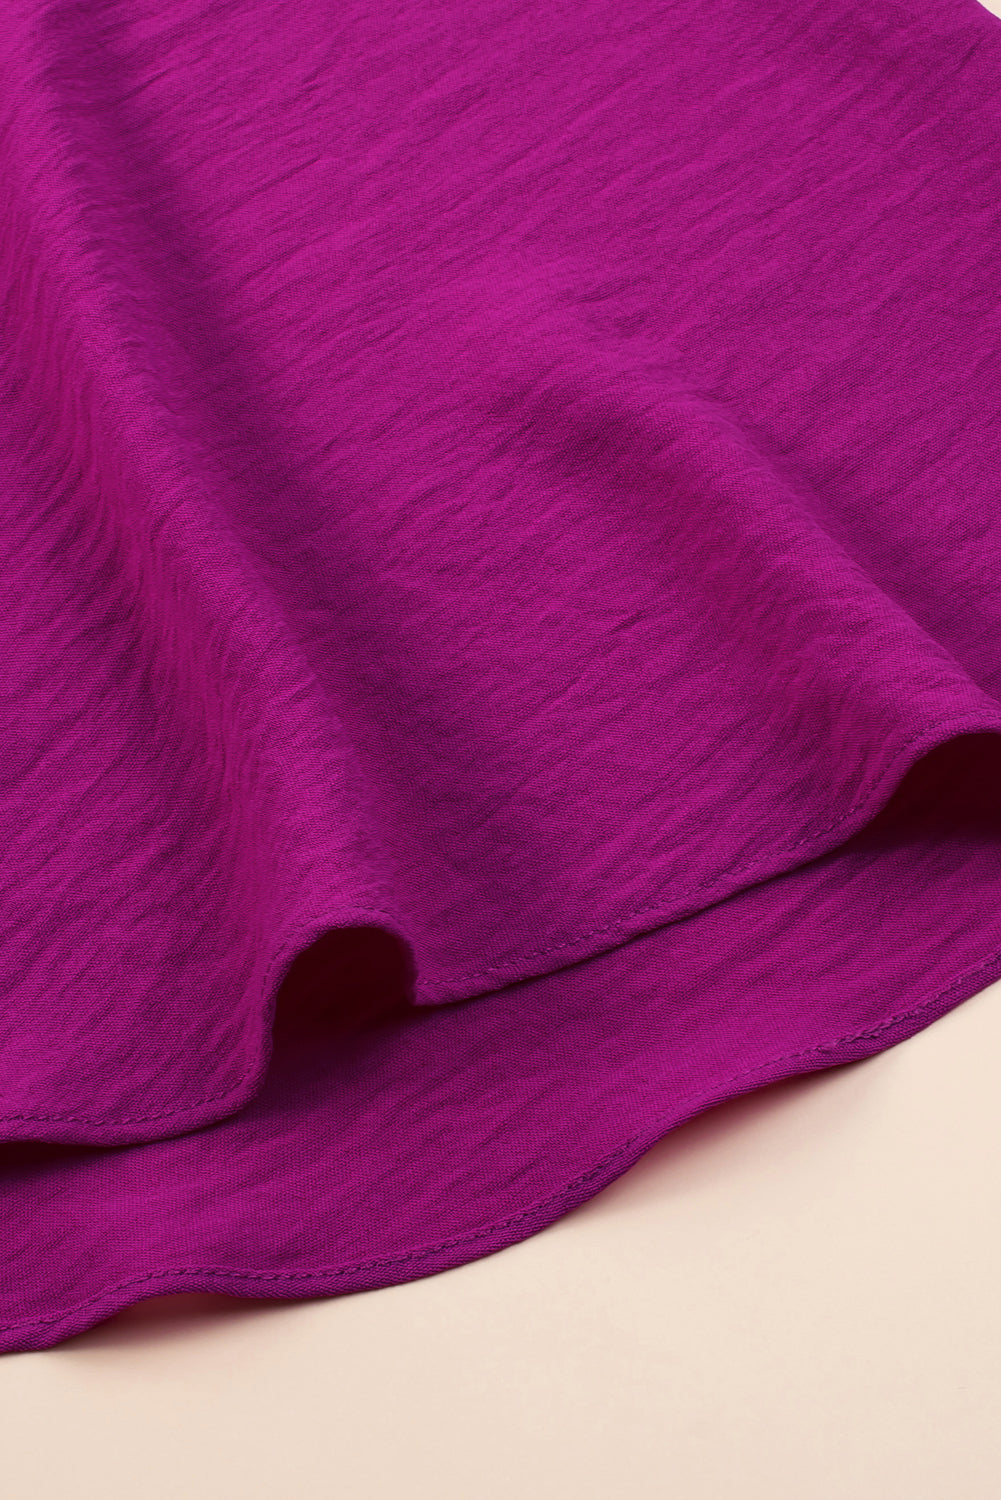 Robe rouge rose plissée à manches larges et col cranté, grande taille